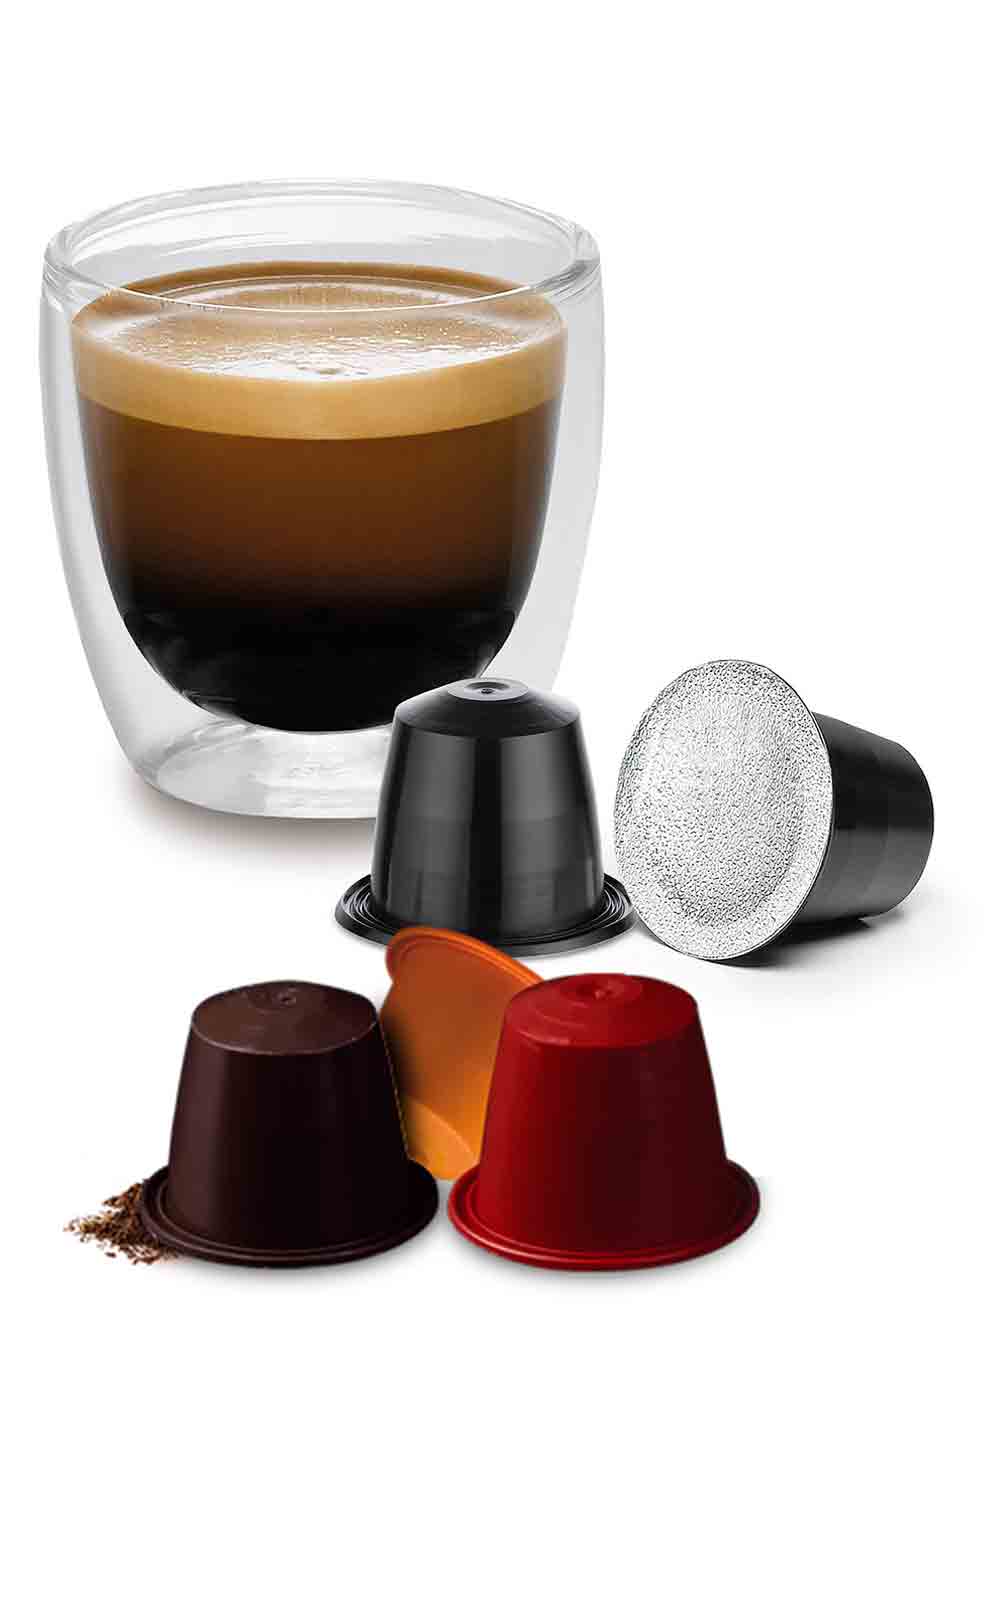 Homeriy Grand bol porte-dosettes de café, Compatible avec toutes les  dosettes de café et capsules de café, Rangement élégant et organisateur de  capsules de café